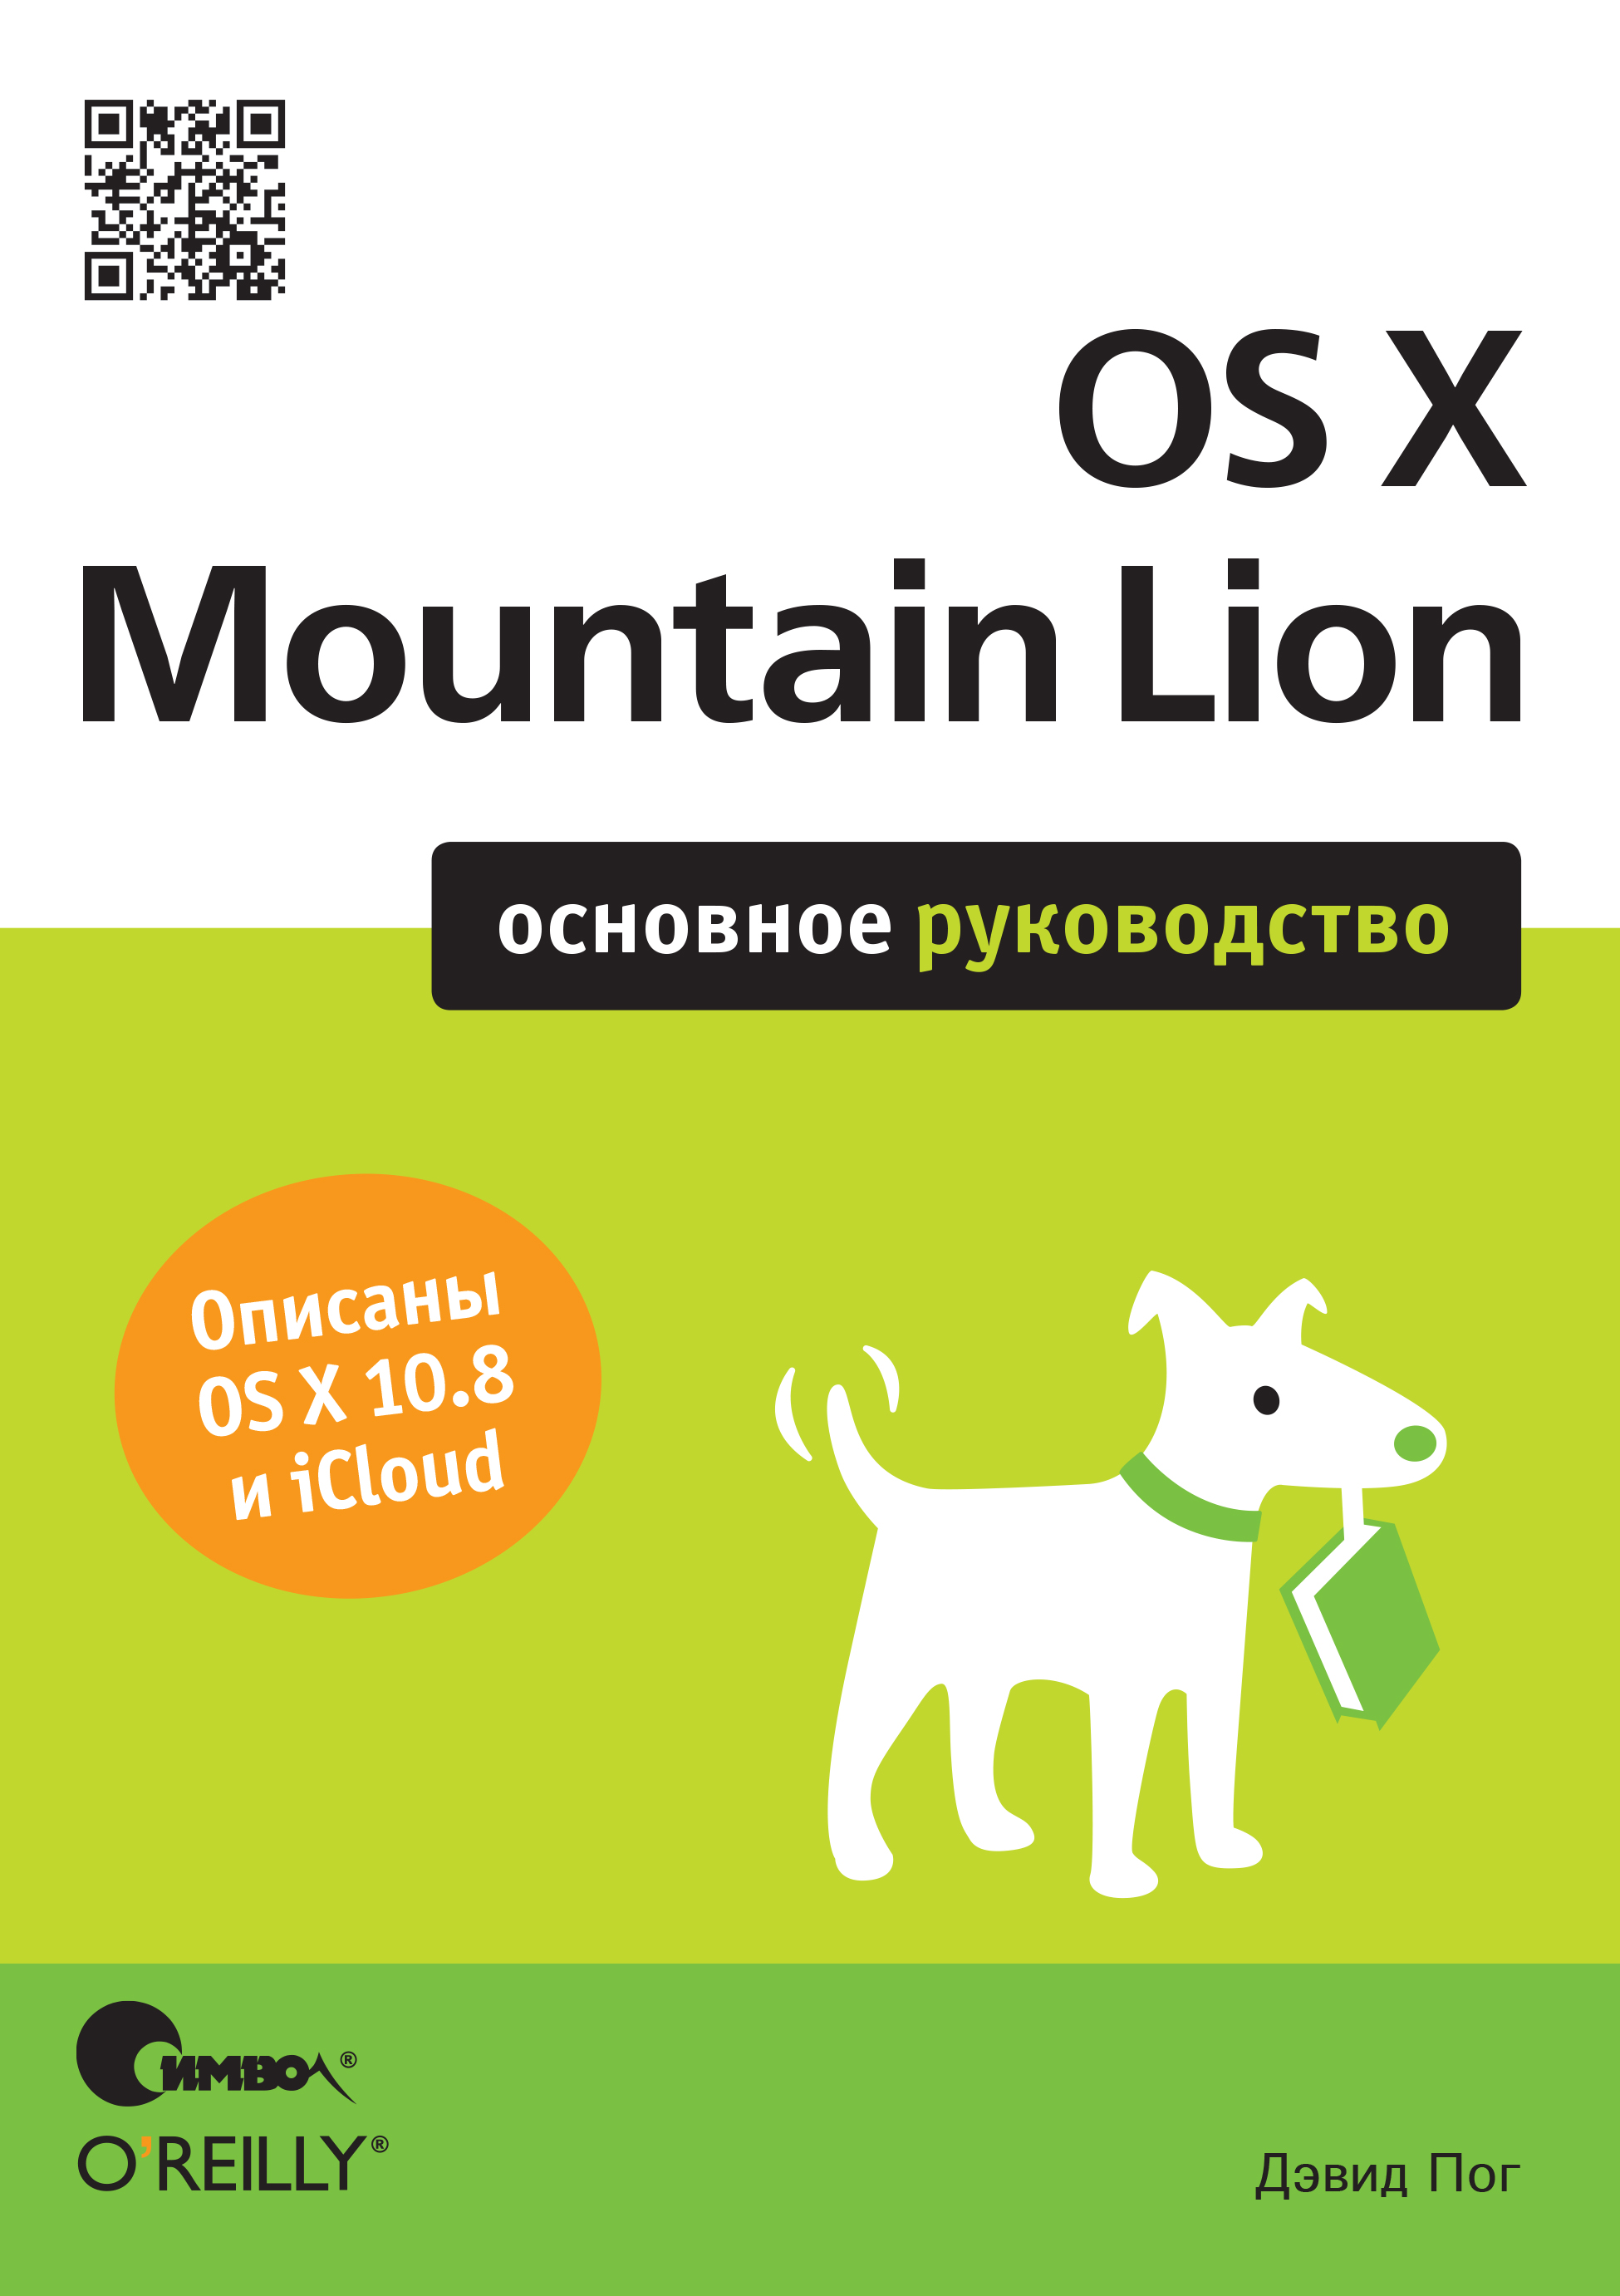 Книга  OS X Mountain Lion. Основное руководство созданная Дэвид Пог, Михаил Зислис может относится к жанру зарубежная компьютерная литература, книги о компьютерах, компьютерная справочная литература, программы. Стоимость электронной книги OS X Mountain Lion. Основное руководство с идентификатором 24499638 составляет 190.00 руб.